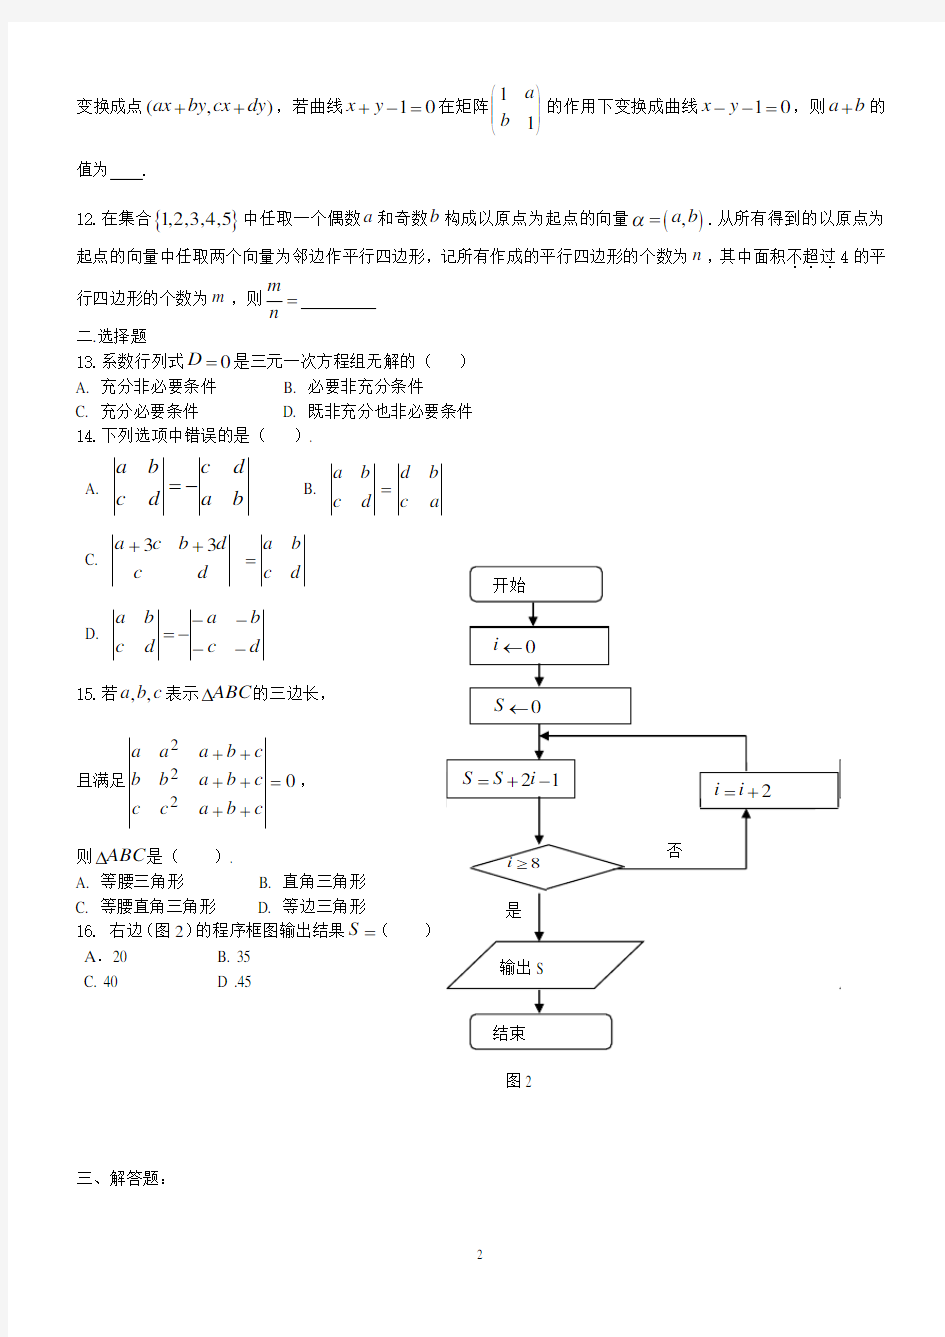 上海版教材_矩阵与行列式习题